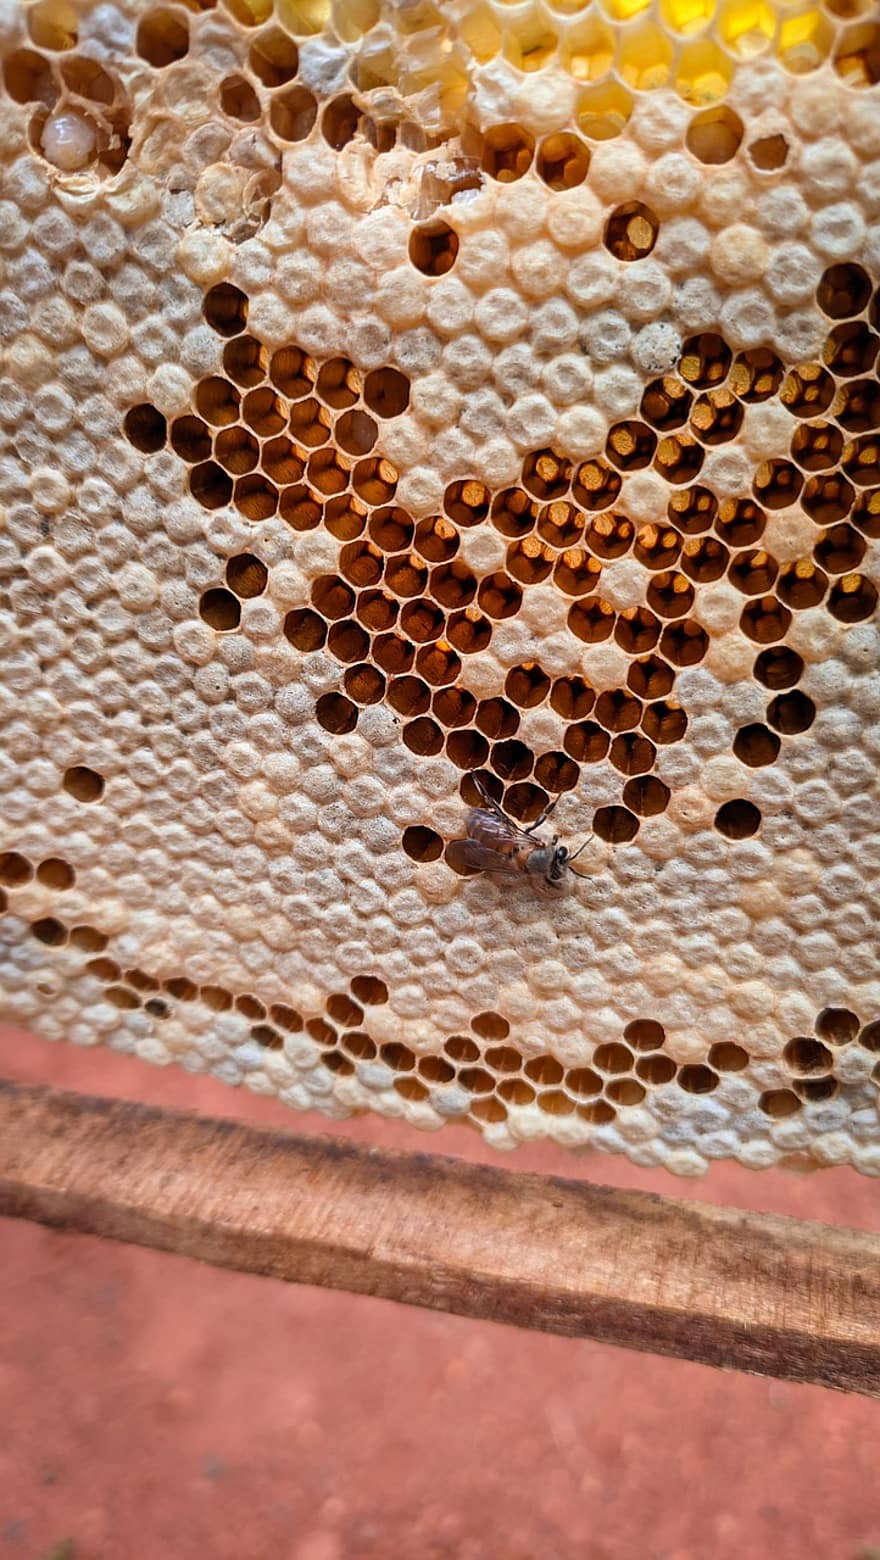 Honig, Biene, Honigrahmen, Rahmen, Honigbiene, Bauernhof, Insekt, Bienenwabe, Bienenstock, Nahansicht, Bienenwachs